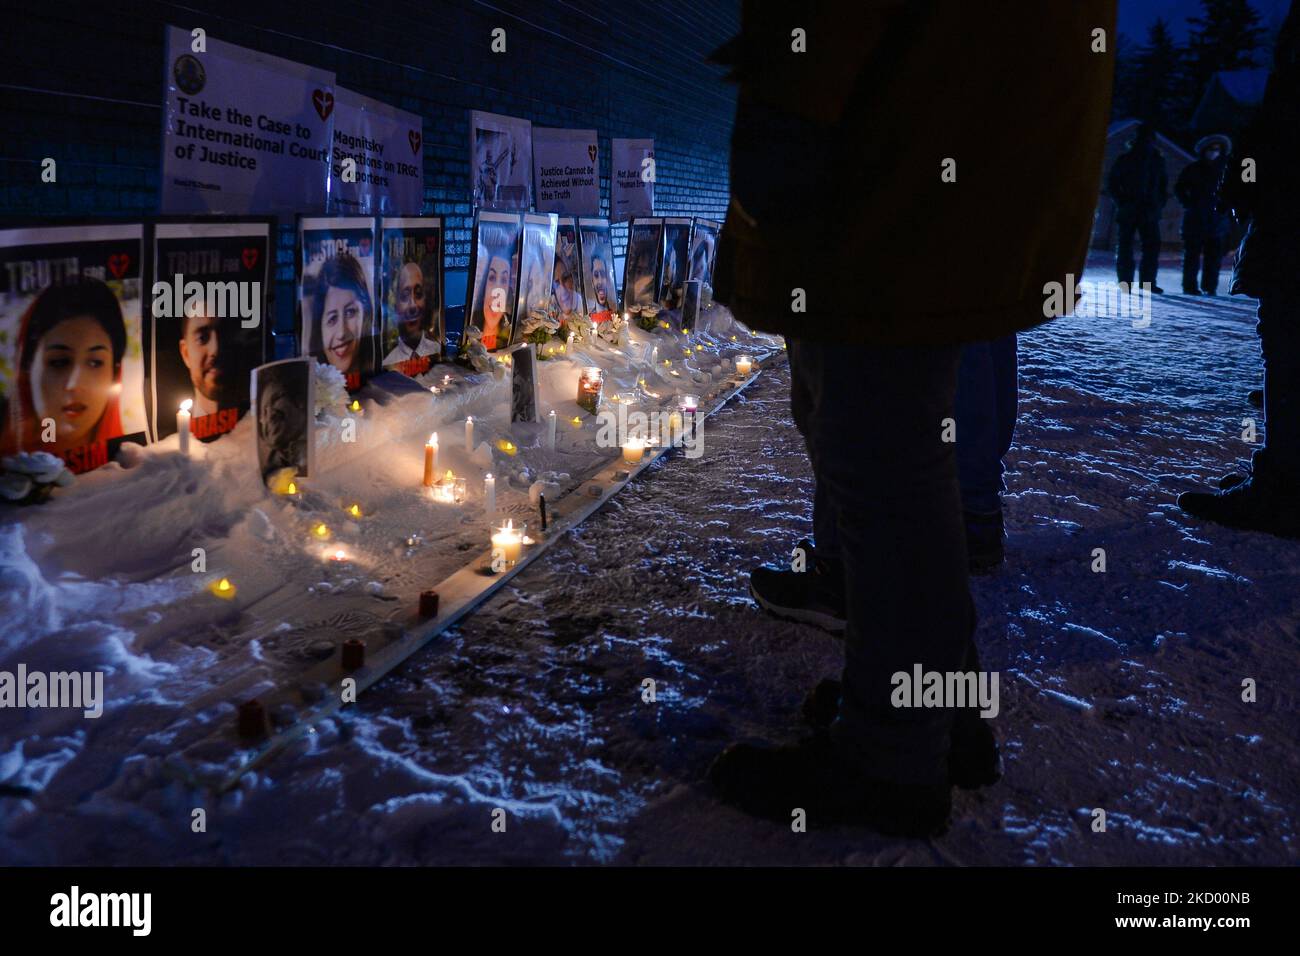 Trauernde bei einer Kerzenlicht-Mahnwache auf der Whyte Avenue in Edmonton anlässlich des zweijährigen Jubiläums des Abwinnens von Flug PS752. Am 8. Januar 2020 schoss das iranische Militär den Flug PS752 der Ukrainian Airlines ab, während das Flugzeug den iranischen Luftraum verließ. 176 Passagiere und Besatzung wurden getötet, darunter 57 kanadische Bürger und 29 kanadische ständige Einwohner (darunter 13 Edmontonier). Am Samstag, den 8. Januar 2022, Kanada. (Foto von Artur Widak/NurPhoto) Stockfoto